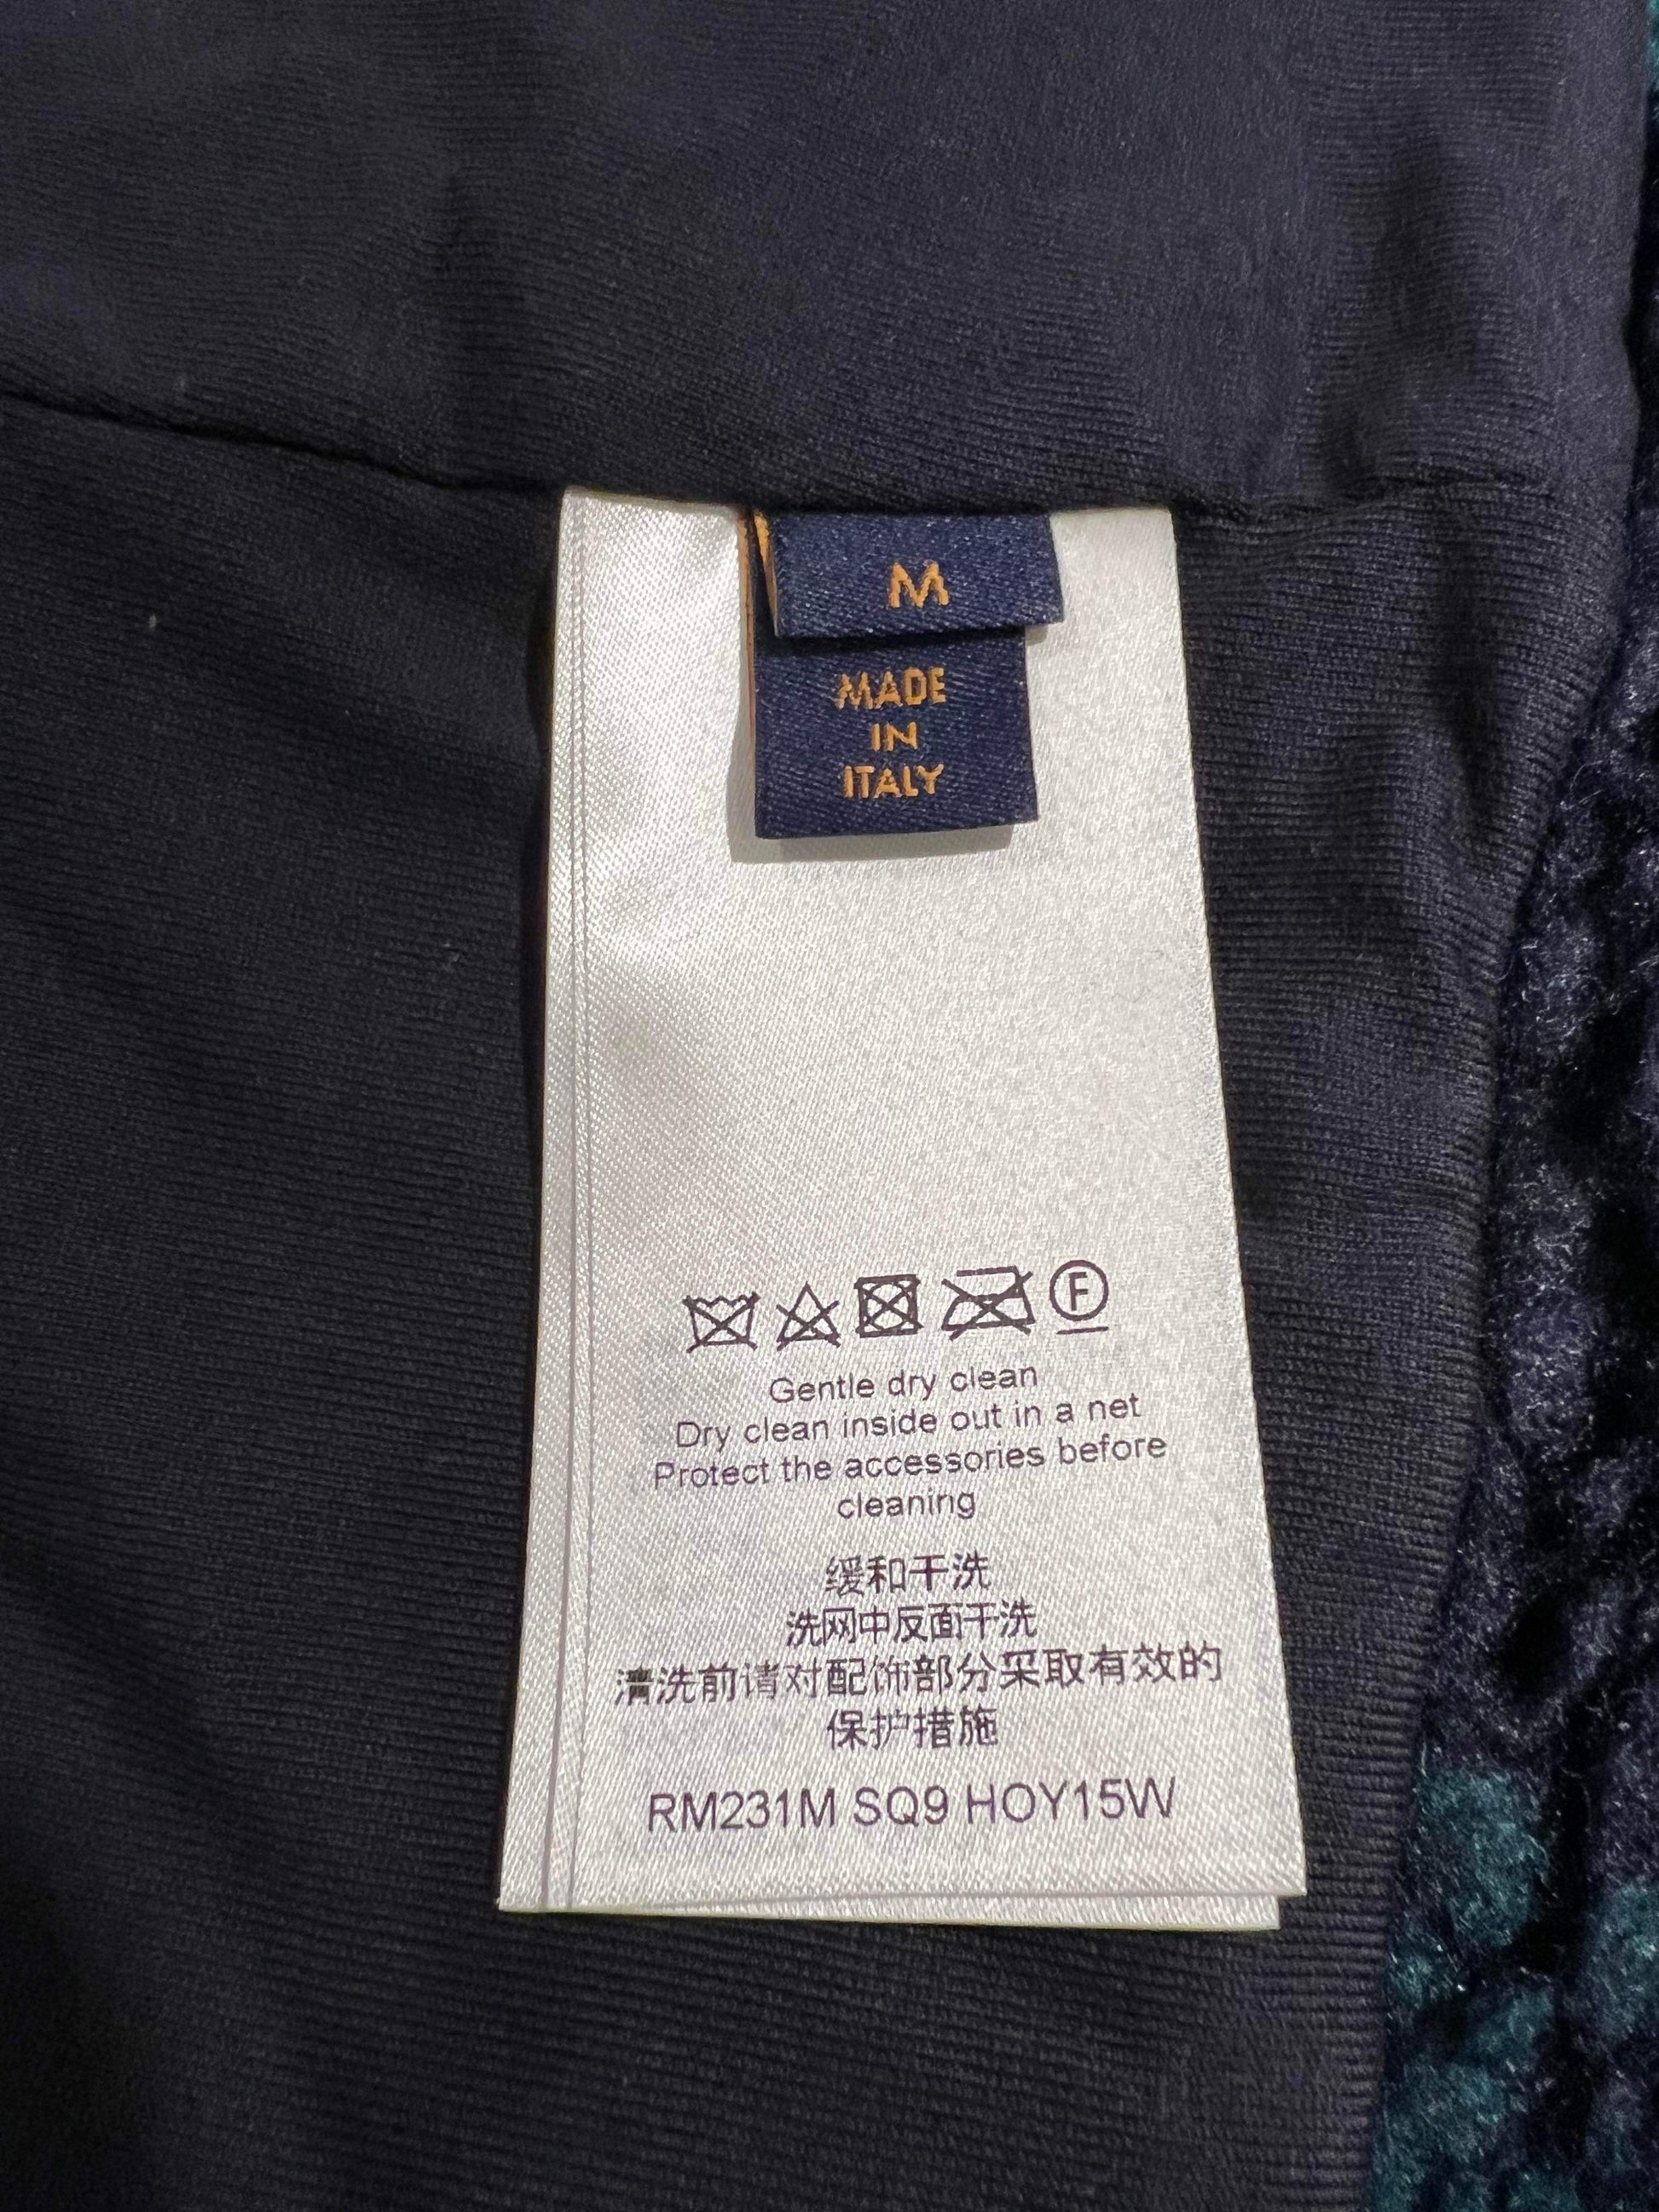 Louis Vuitton Blue & Orange Camo Monogram Fleece Zip Up Jacket